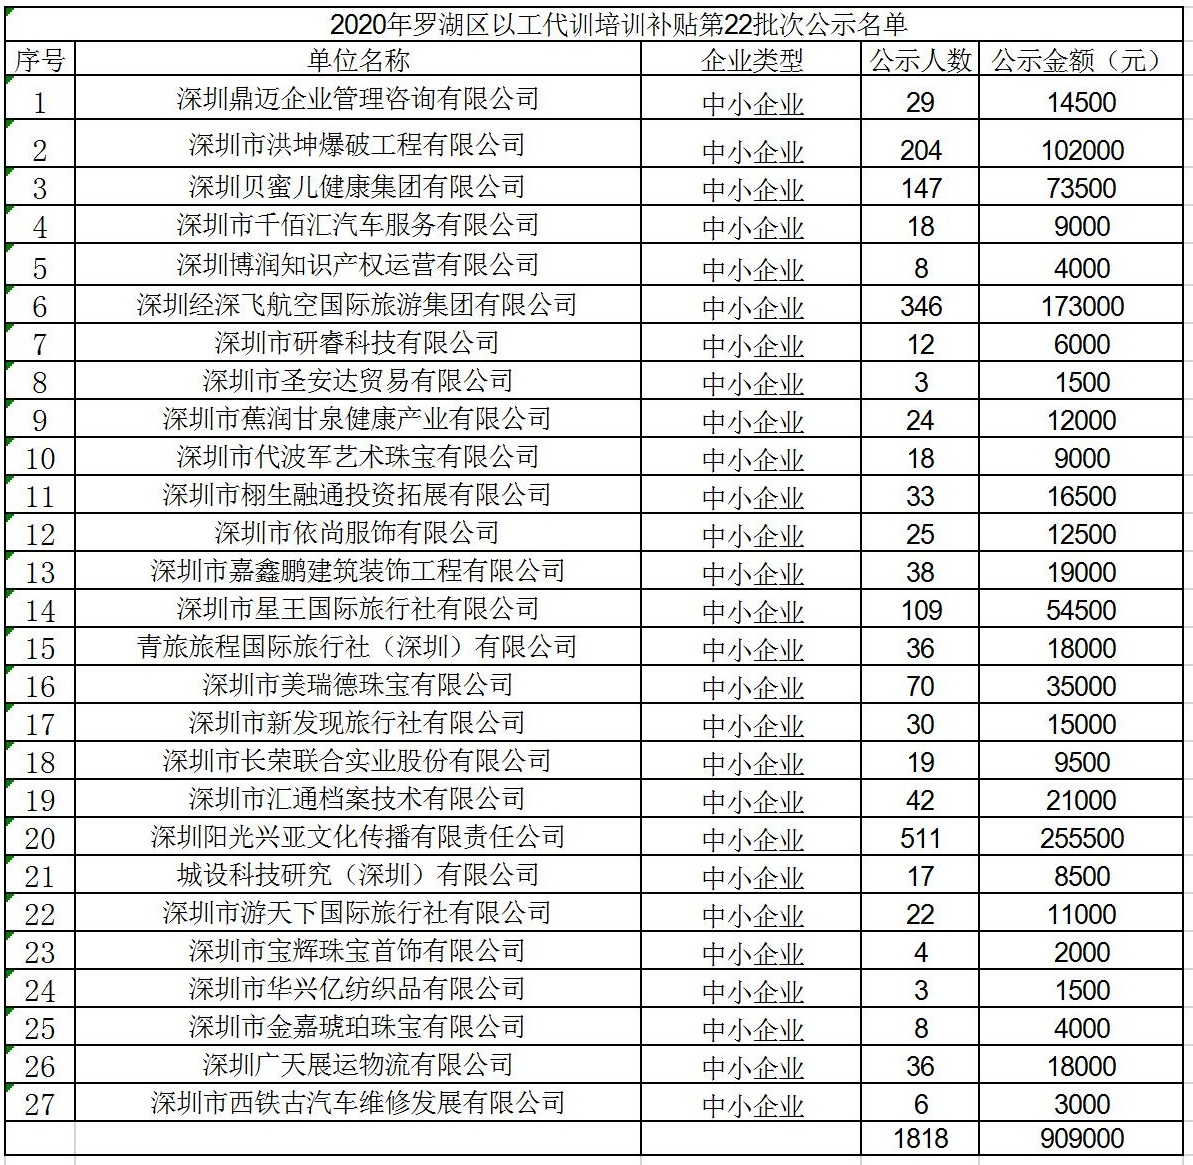 2020年深圳市罗湖区以工代训培训补贴第22批次公示名单.jpg